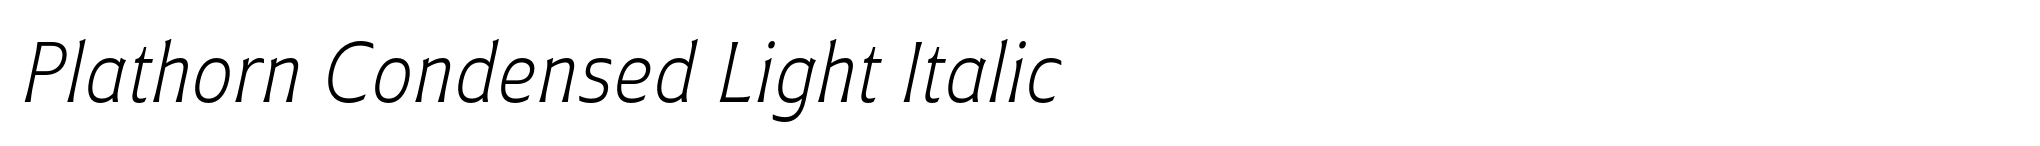 Plathorn Condensed Light Italic image